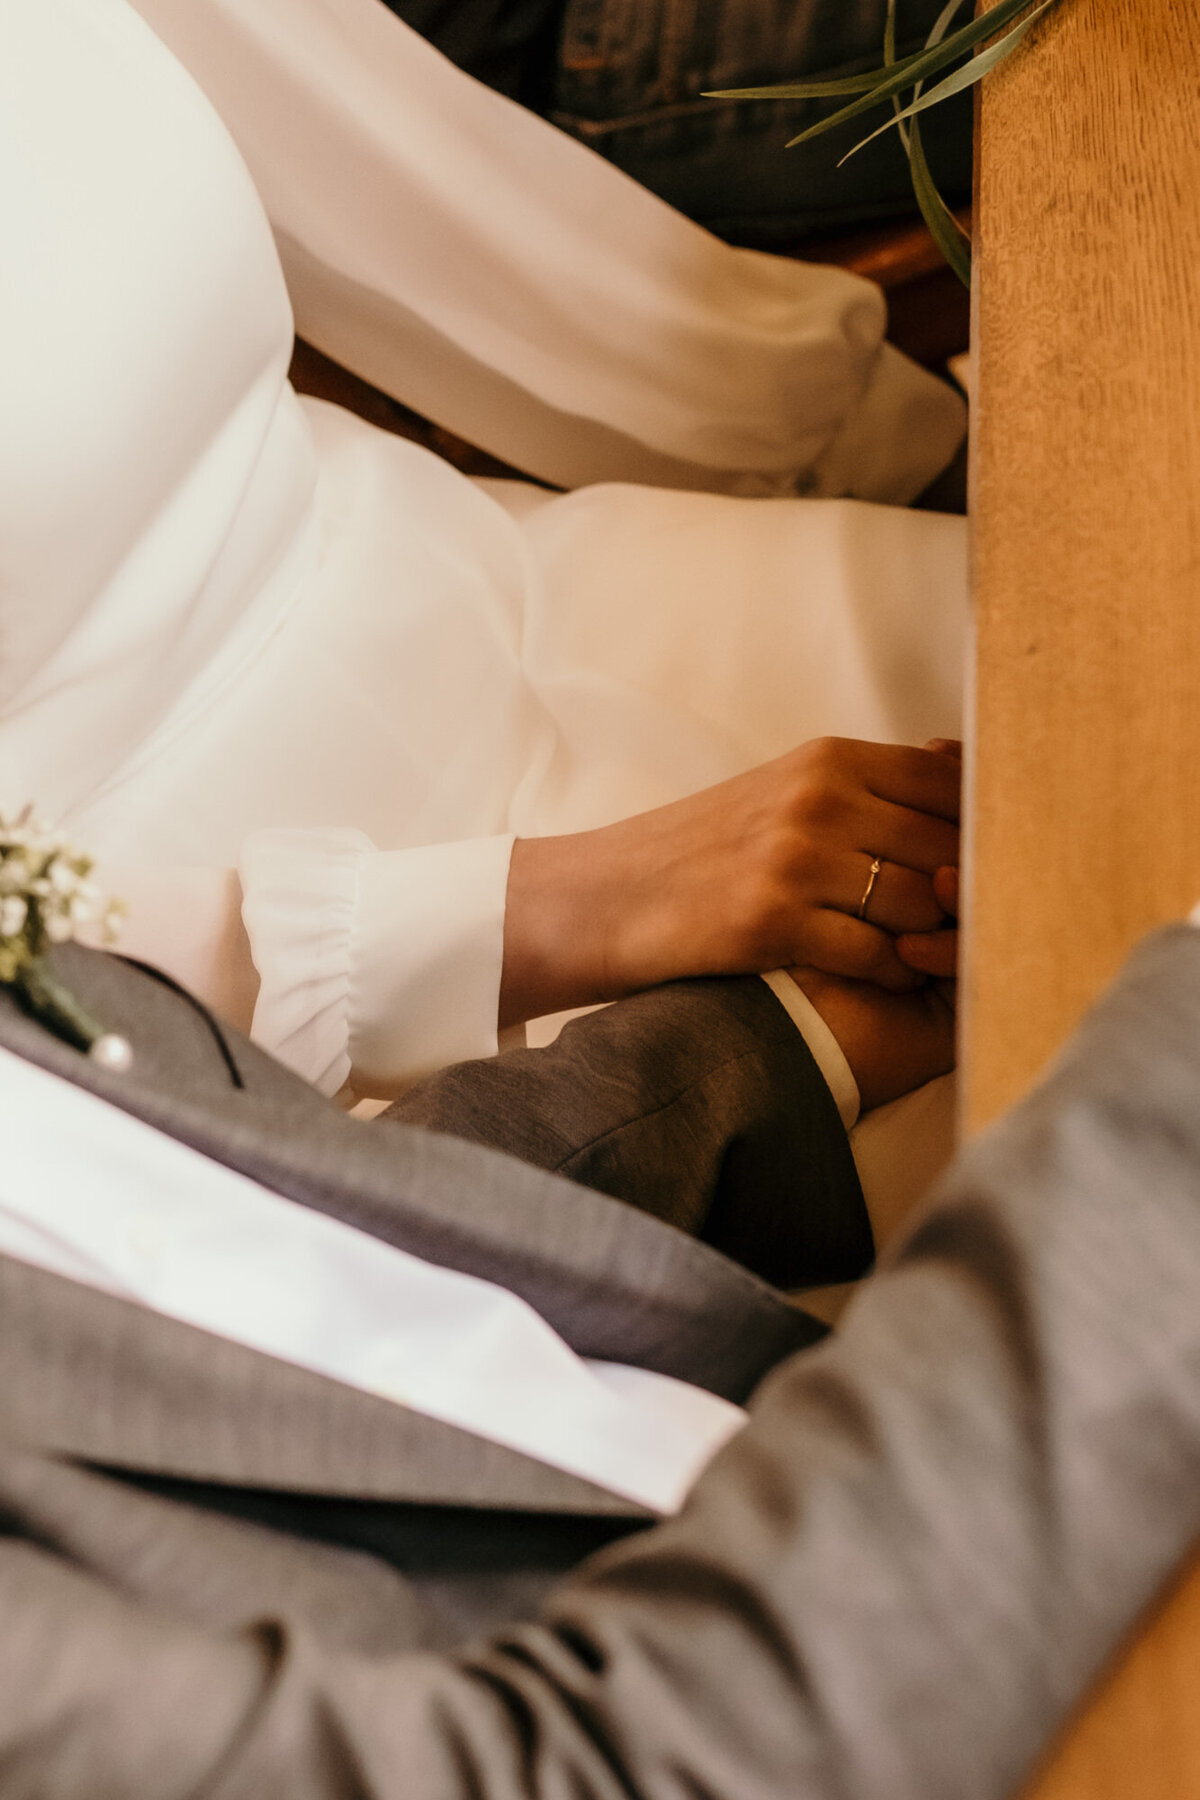 Während der standesamtlichen Trauung hält das Hochzeitspaar seine Hände unter dem Tisch verschränkt.